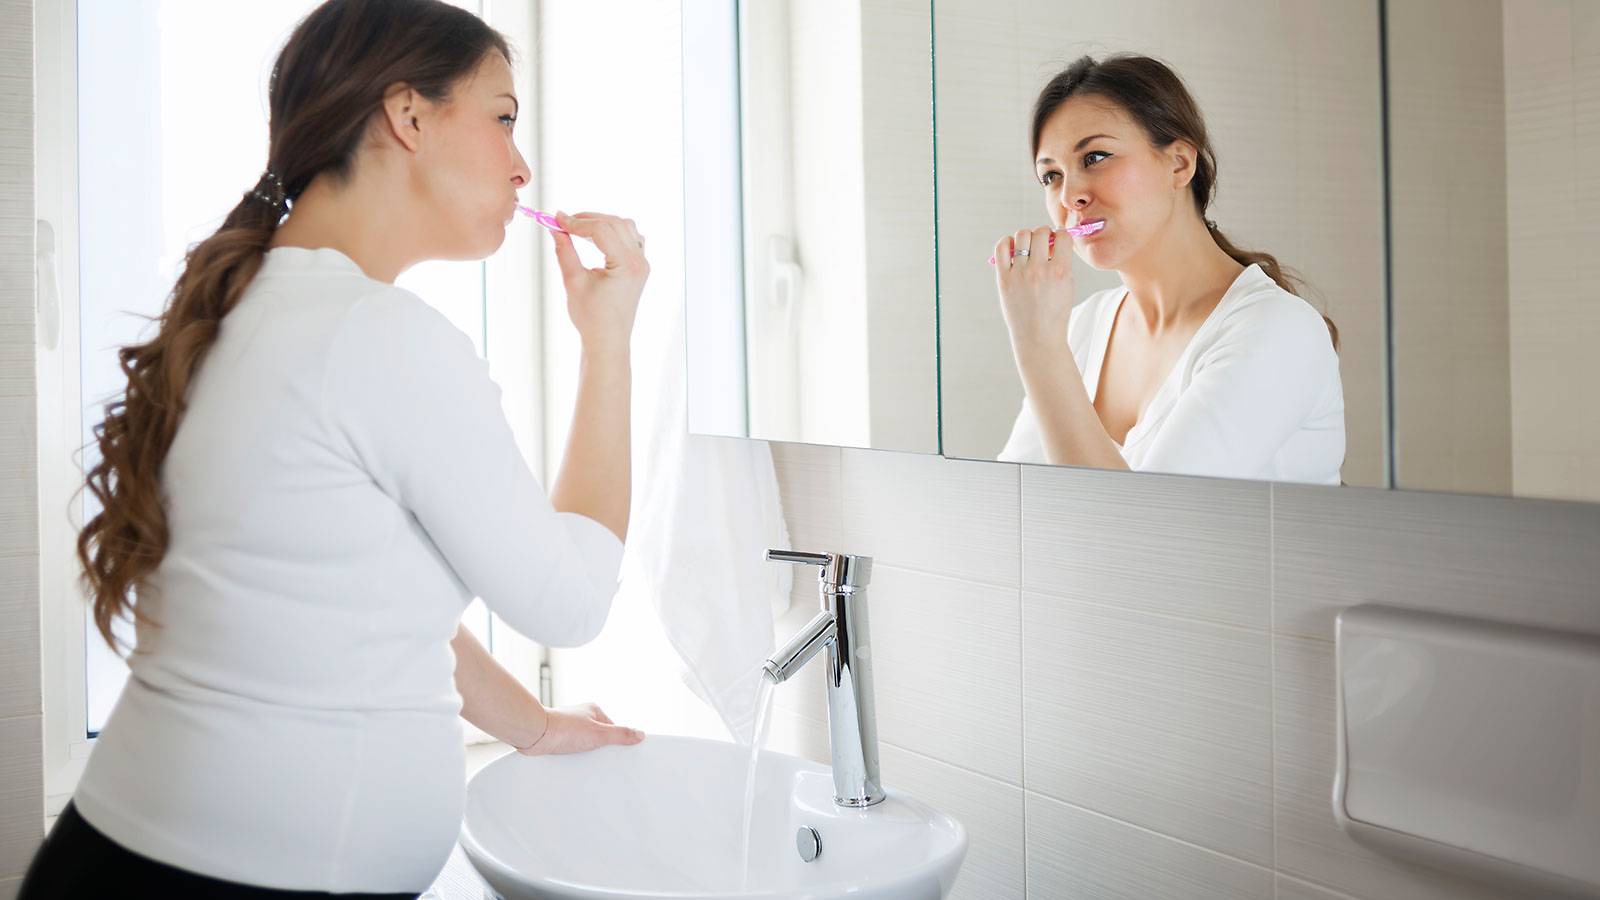 Phụ nữ mang thai cần vệ sinh răng miệng cẩn thận và kỹ lưỡng